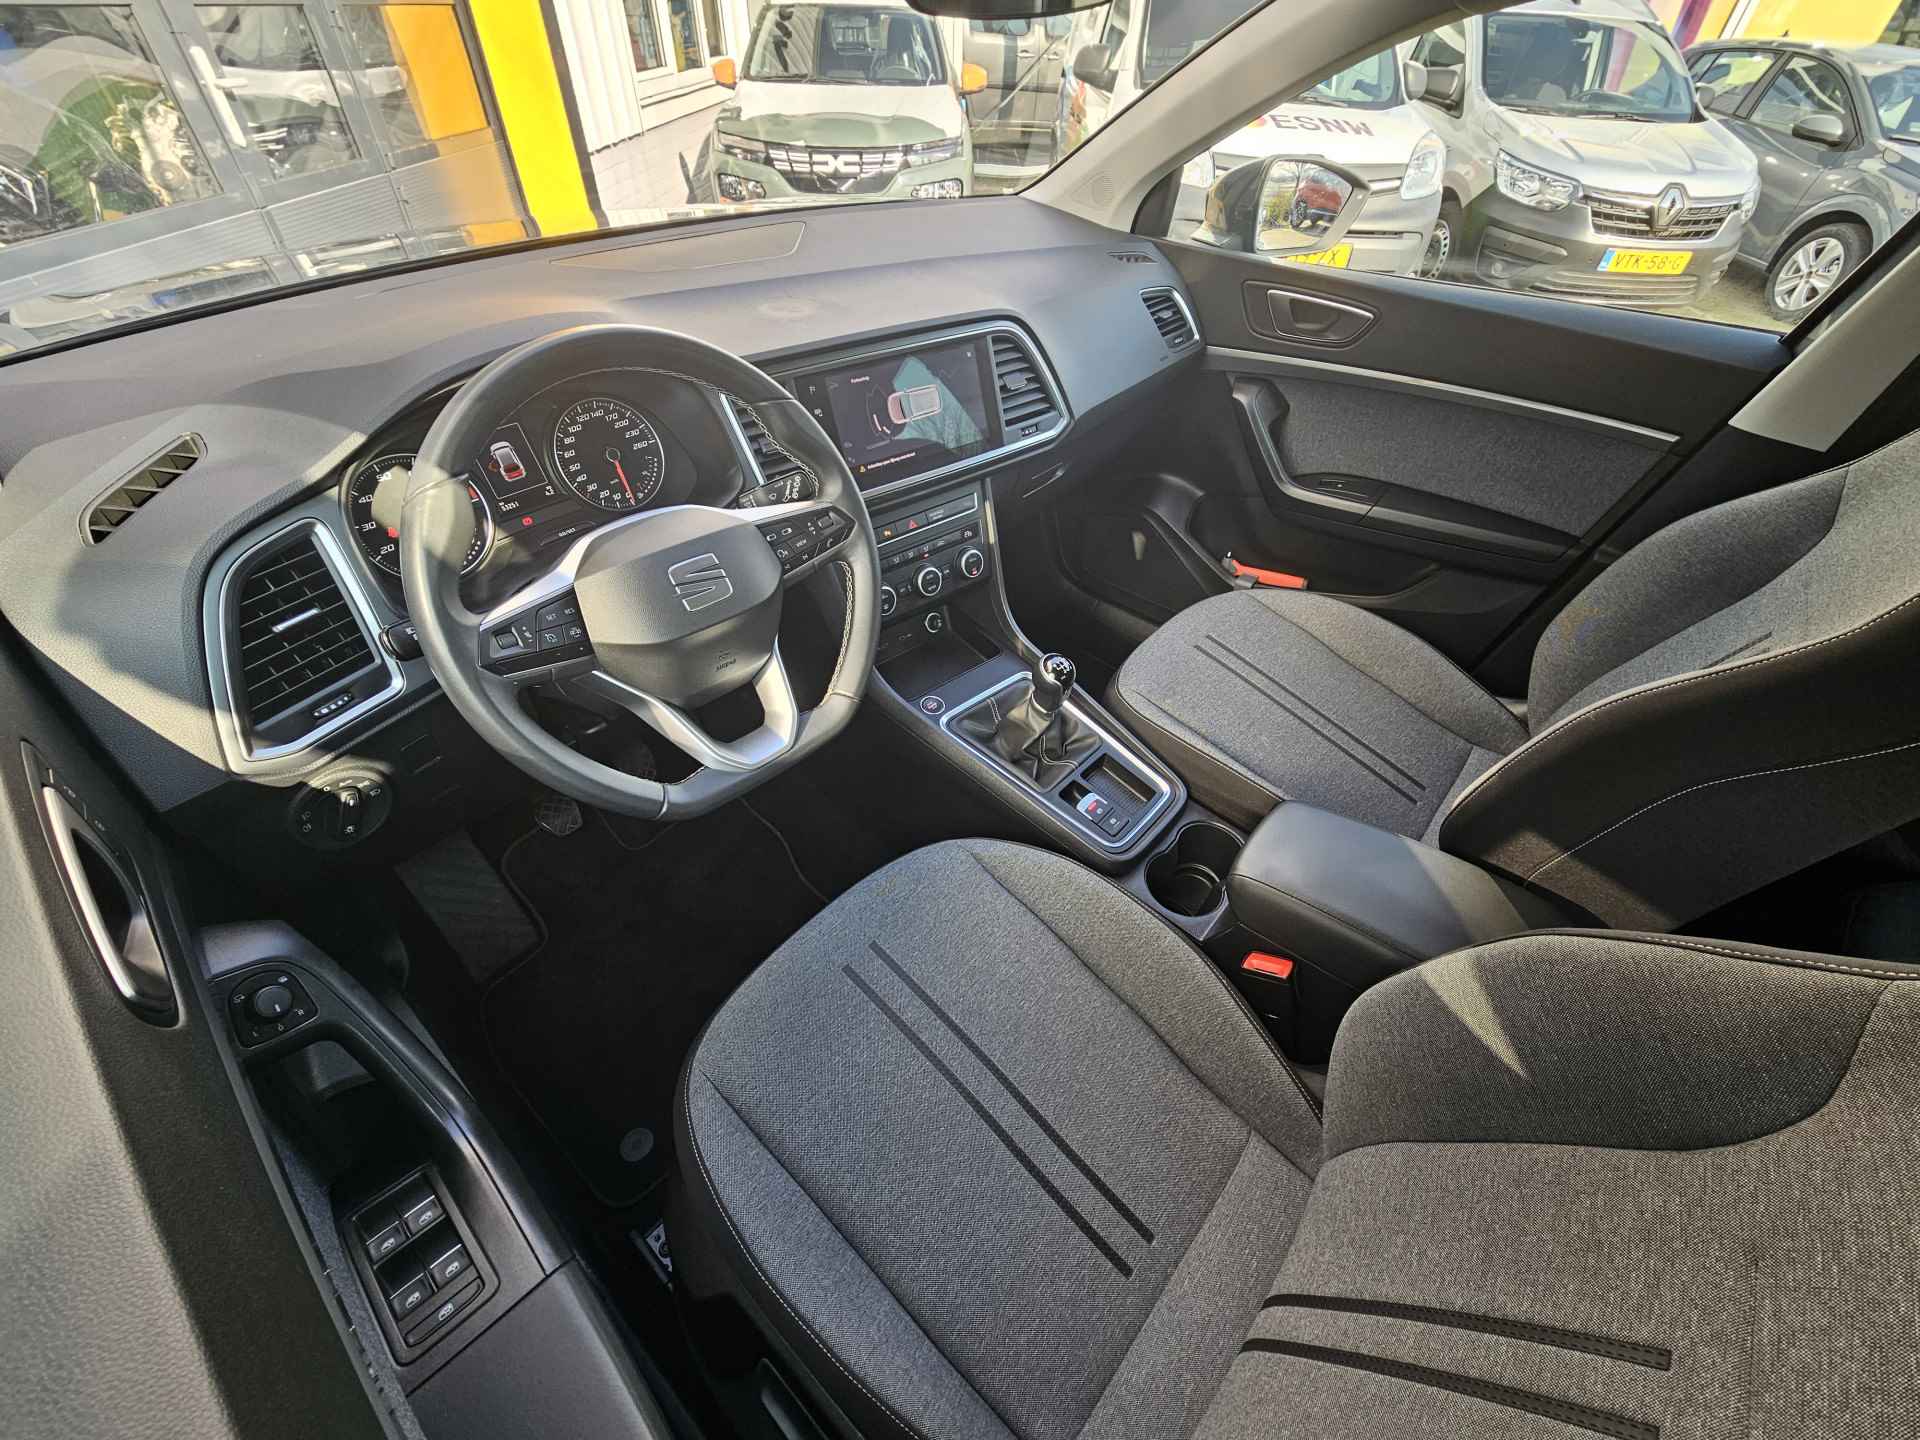 SEAT Ateca 1.0 TSI 110 pk Style Business Intense | Navigatie | LED | Lm velgen | Camera | Sensoren | All Season banden | incl. Bovag rijklaarpakket met 12 maanden garantie | - 14/35